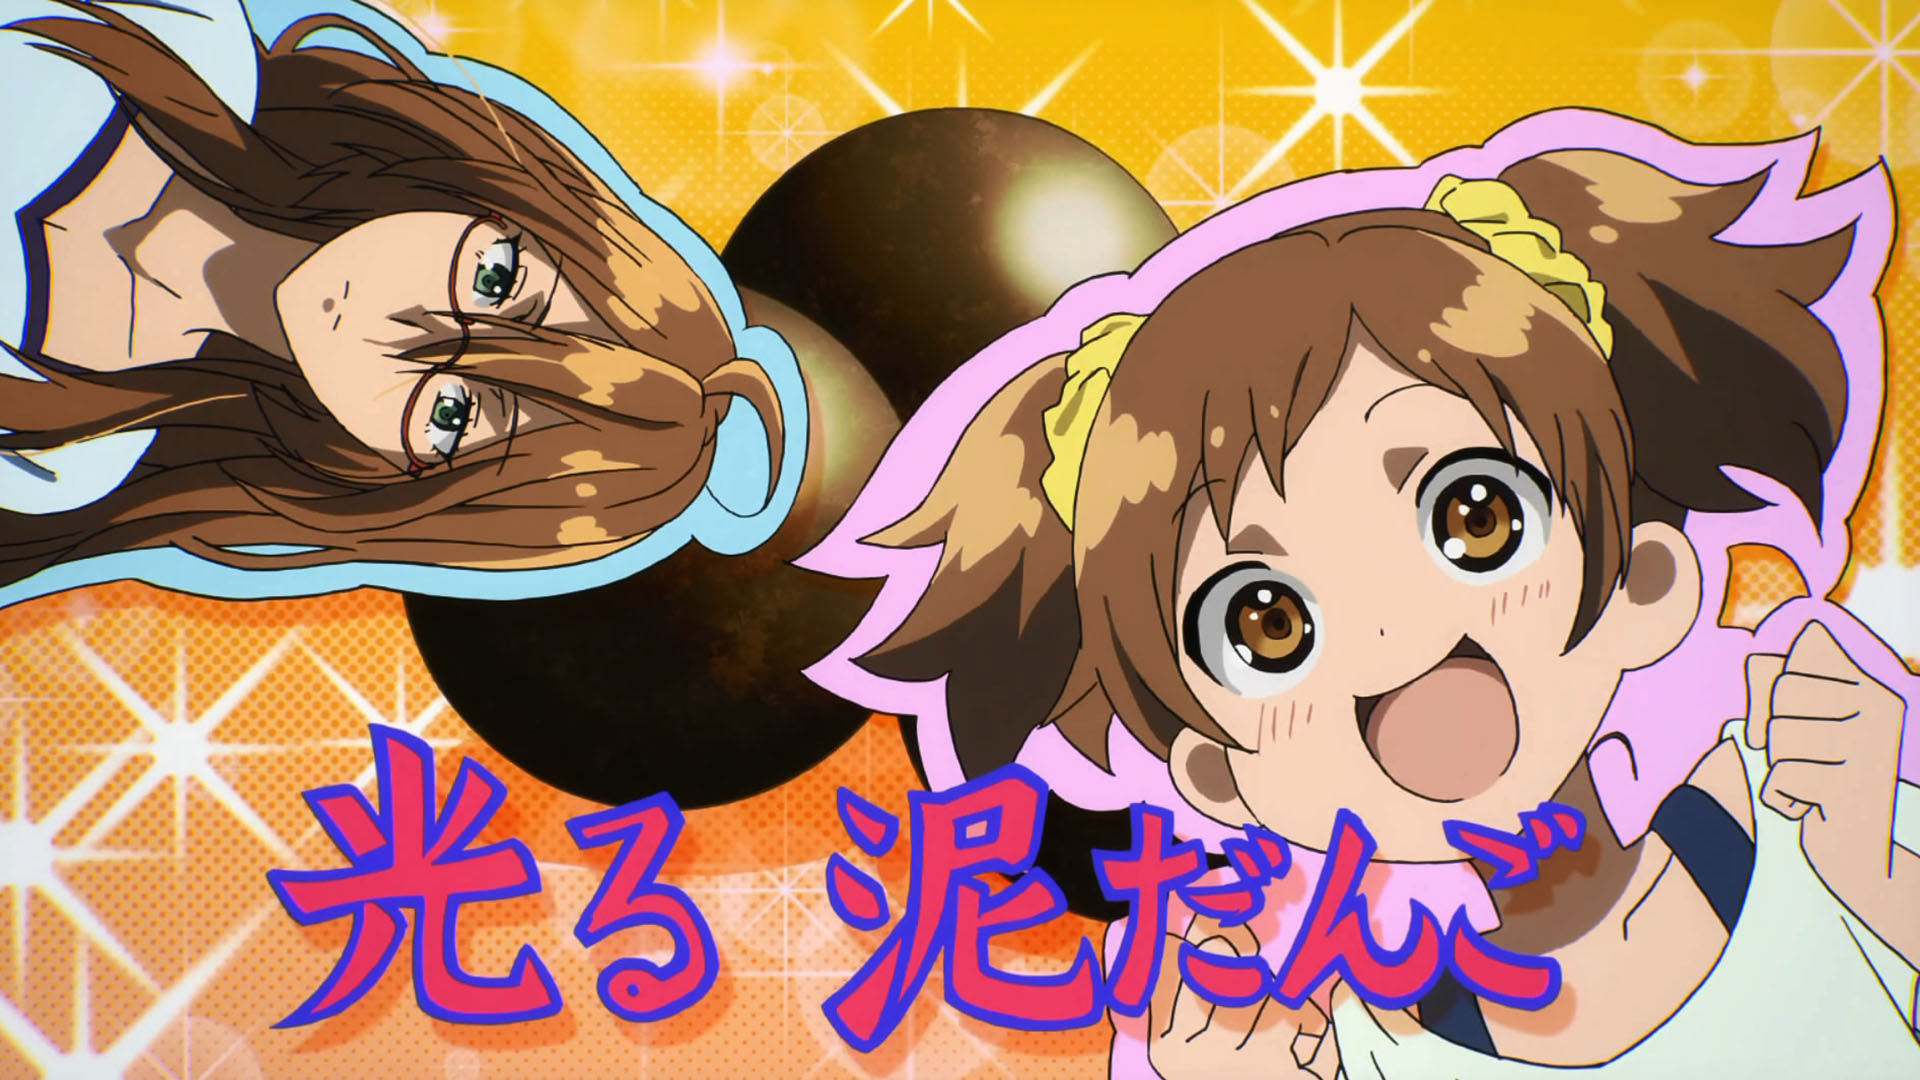 BEAUTIFUL - Bokura wa Minna Kawaisou Episode 8 Anime Review - Best